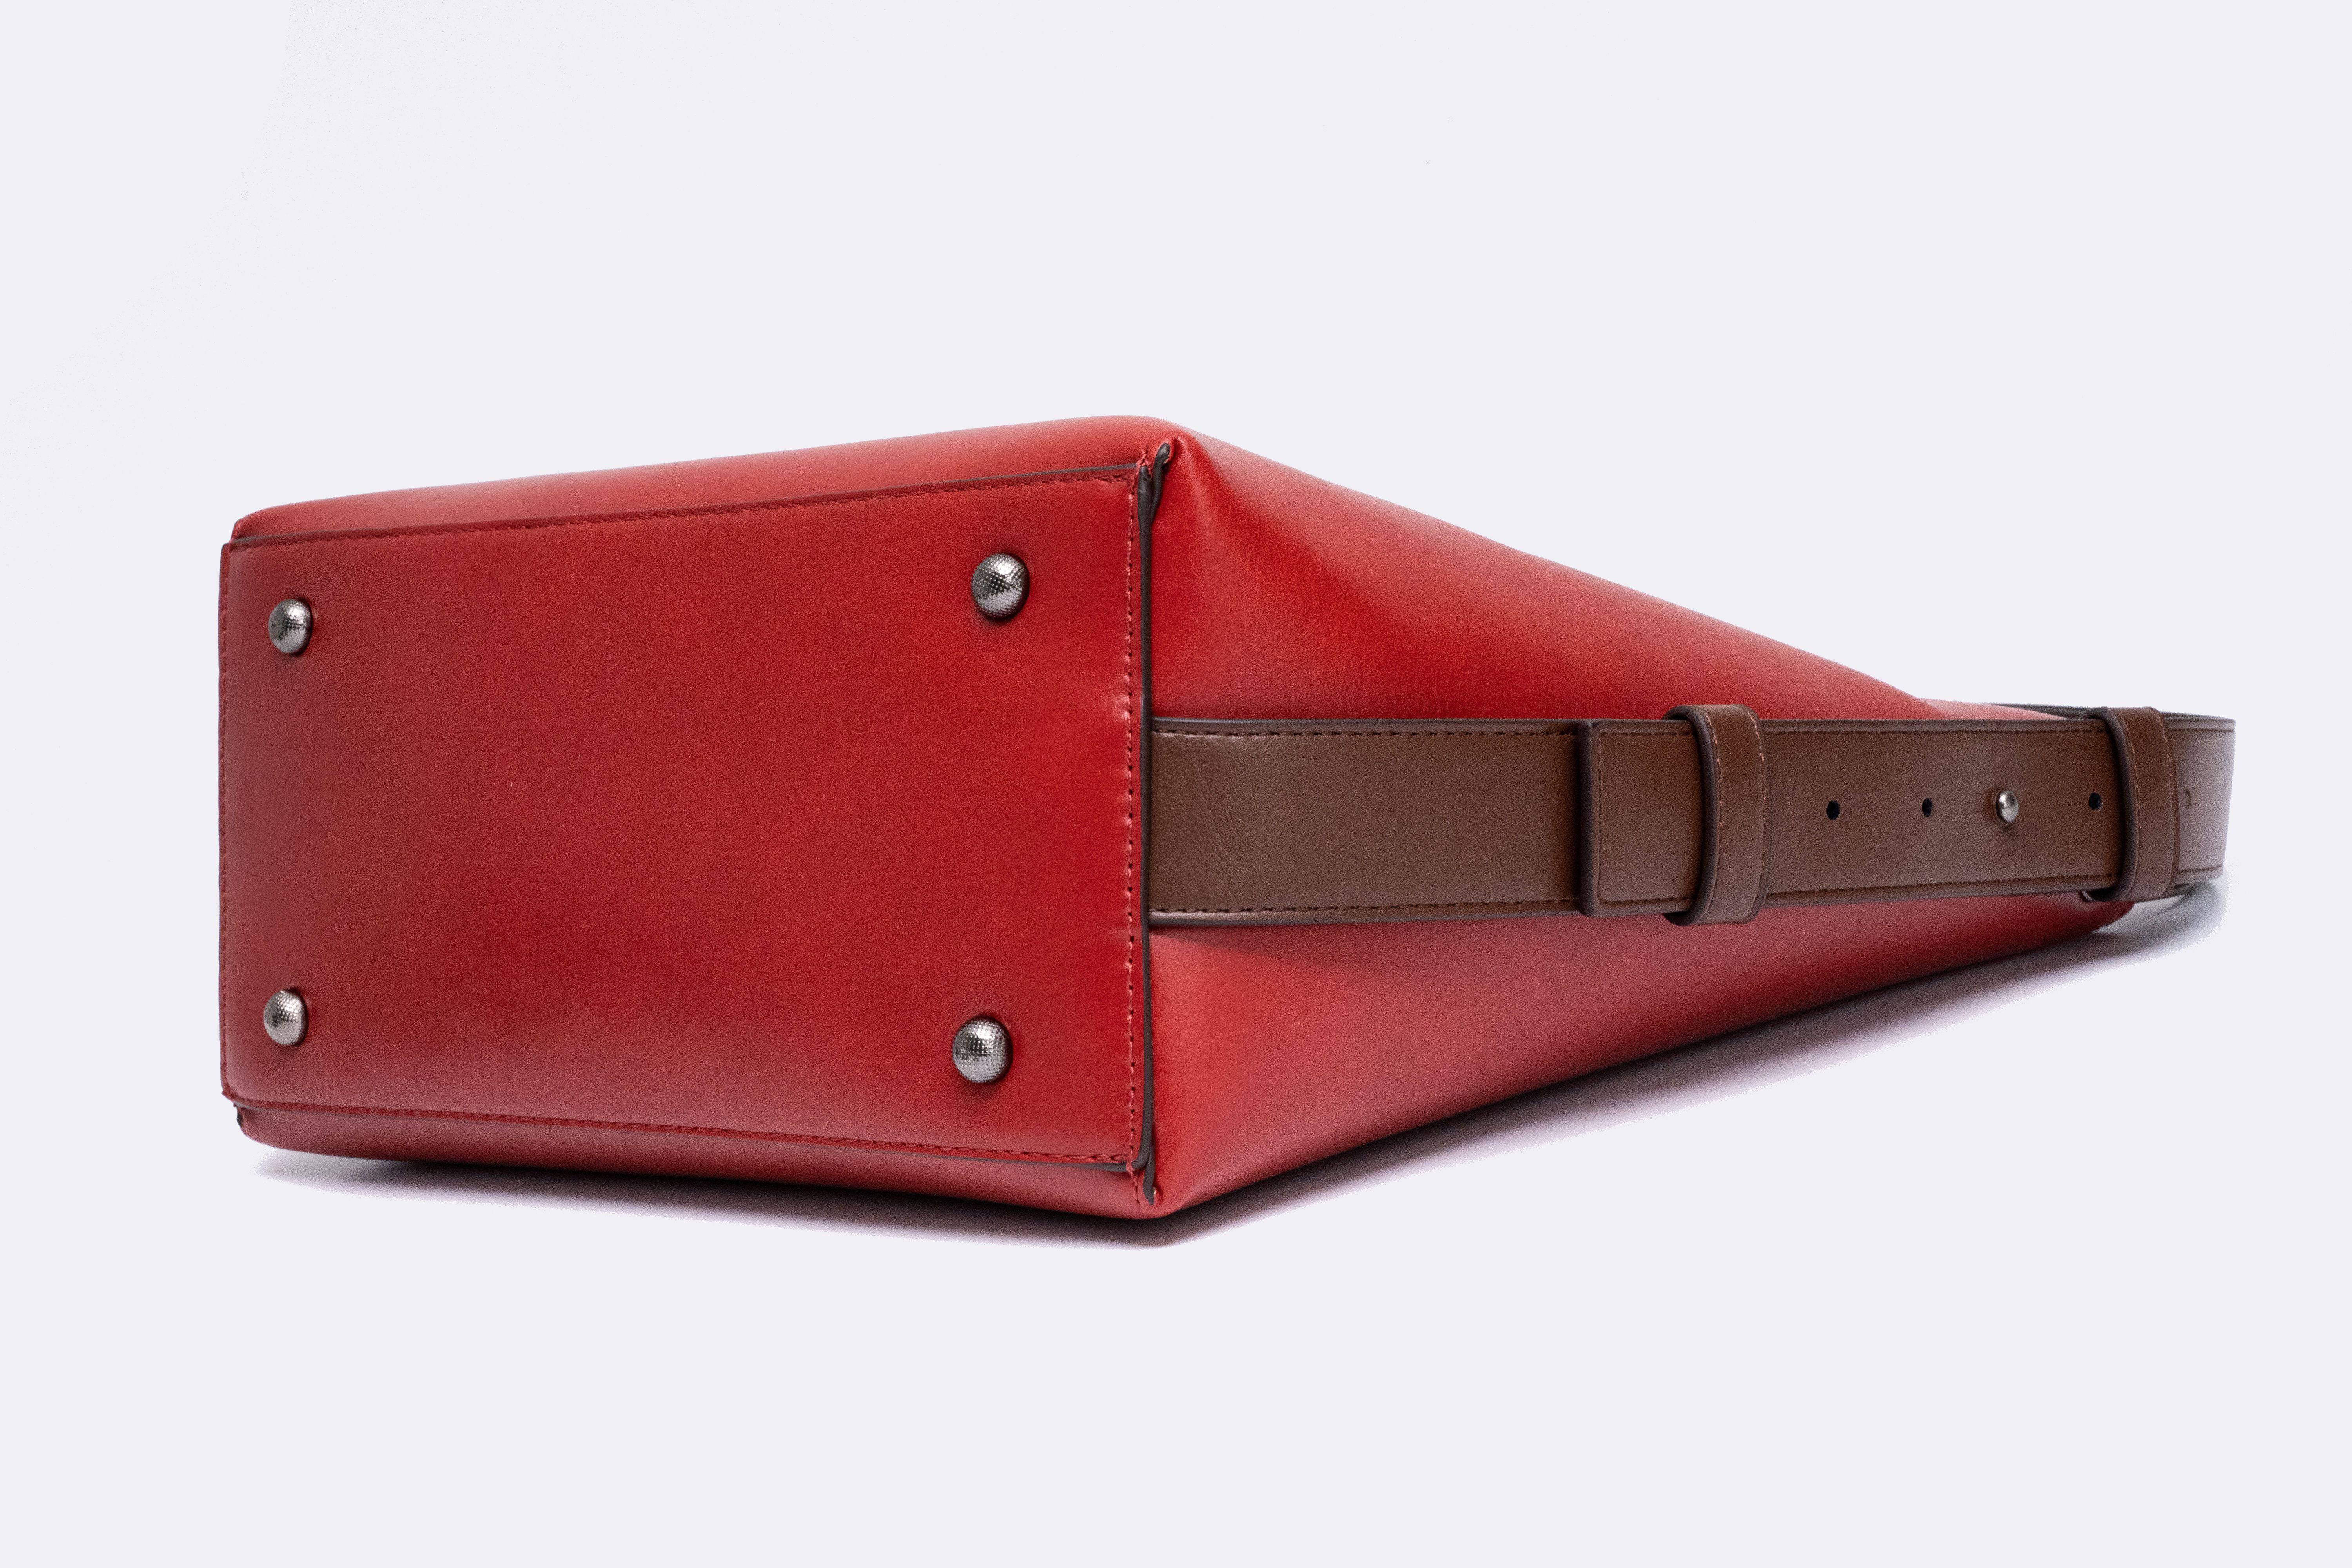 حقيبة نسائية باللون الاحمر مربعة الشكل بحجم متوسط وتصميم أنيق - KSA